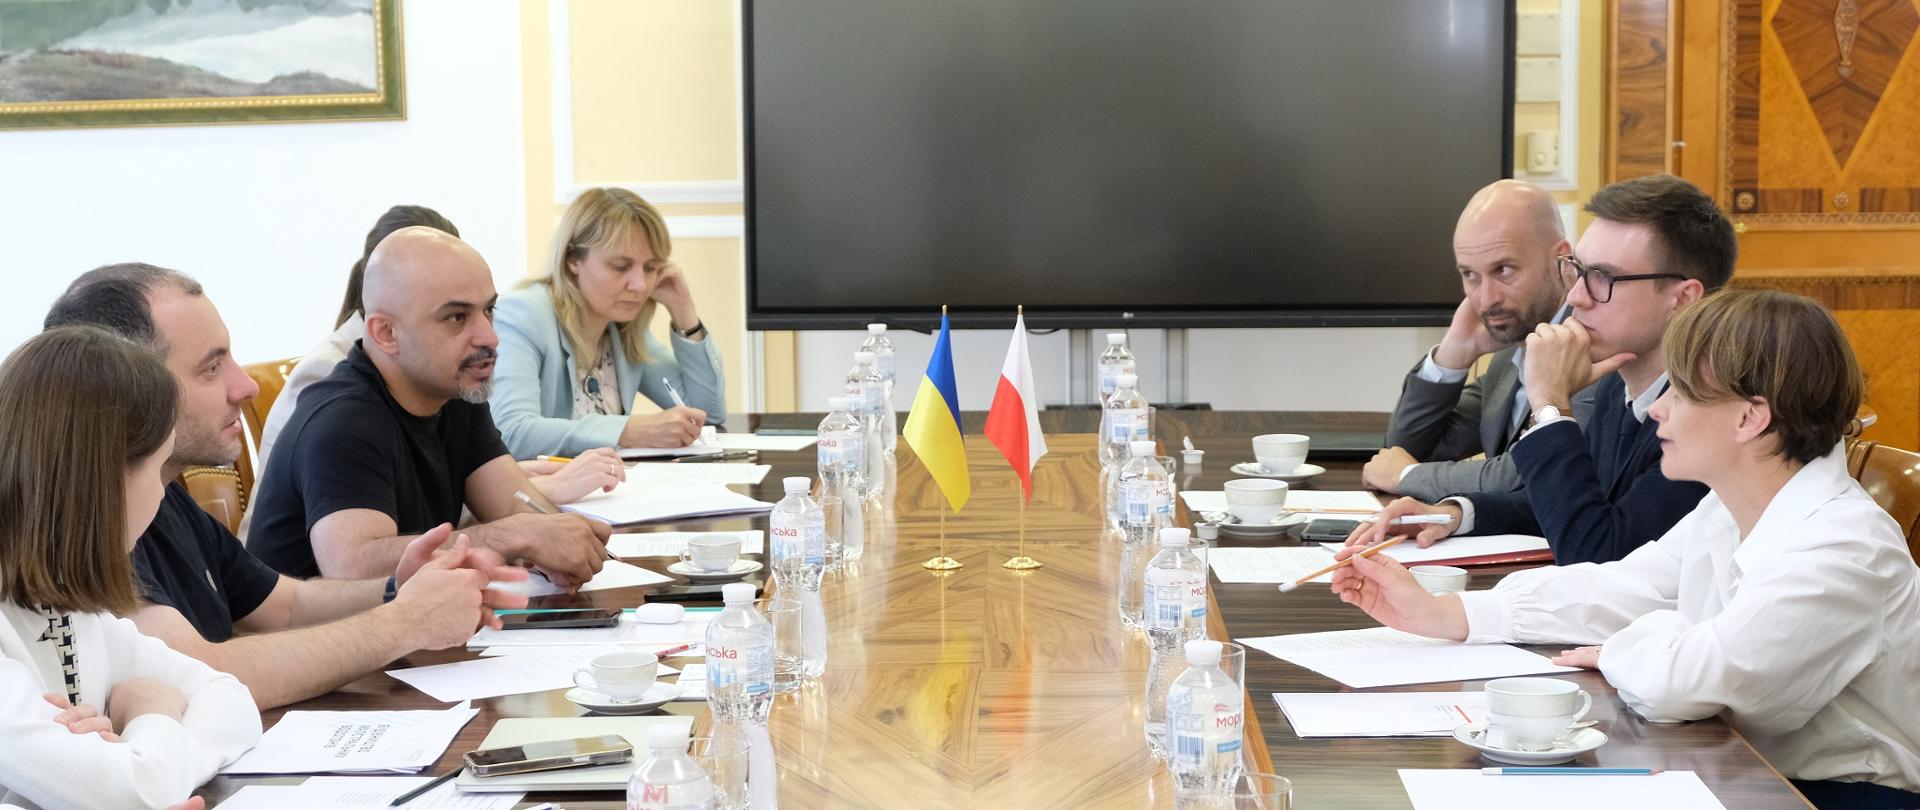 Rozmowy polskiej i ukraińskiej delegacji w Kijowie. Po obu stronach długiego drewnianego stołu siedzą przedstawiciele obu państw.